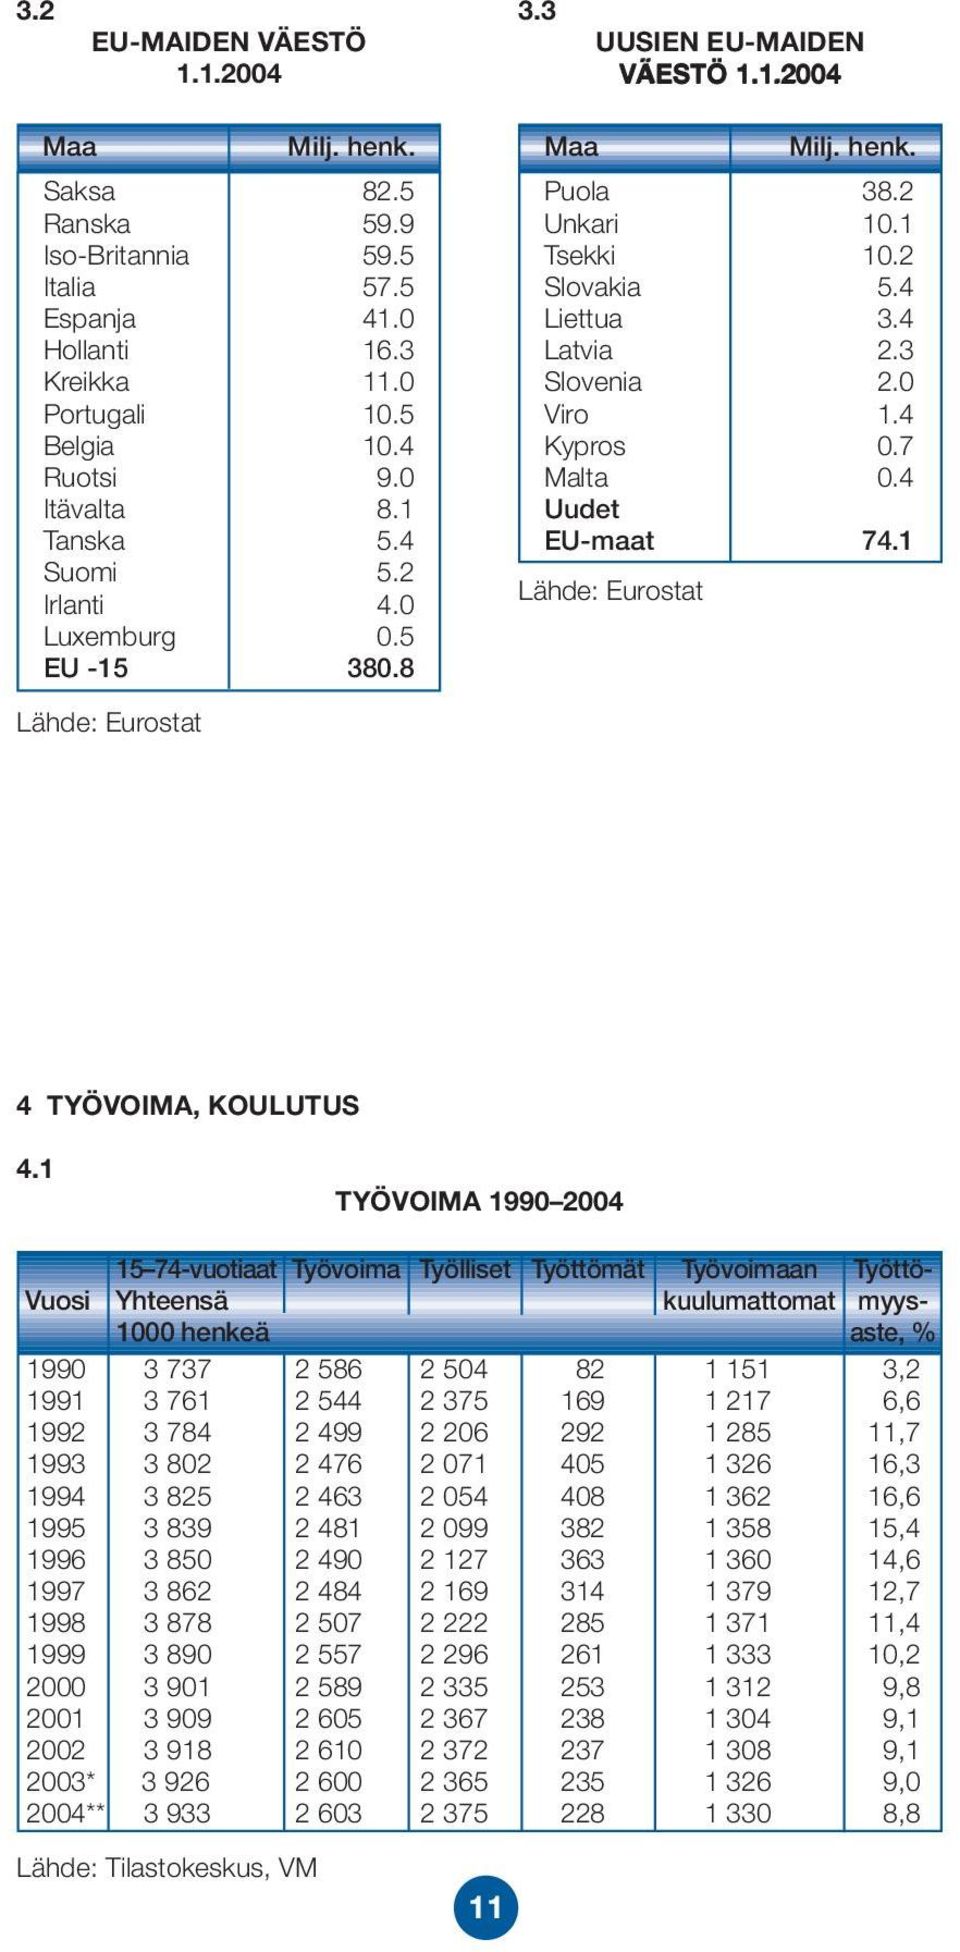 3 Slovenia 2.0 Viro 1.4 Kypros 0.7 Malta 0.4 Uudet EU-maat 74.1 Lähde: Eurostat 4 TYÖVOIMA, KOULUTUS 4.